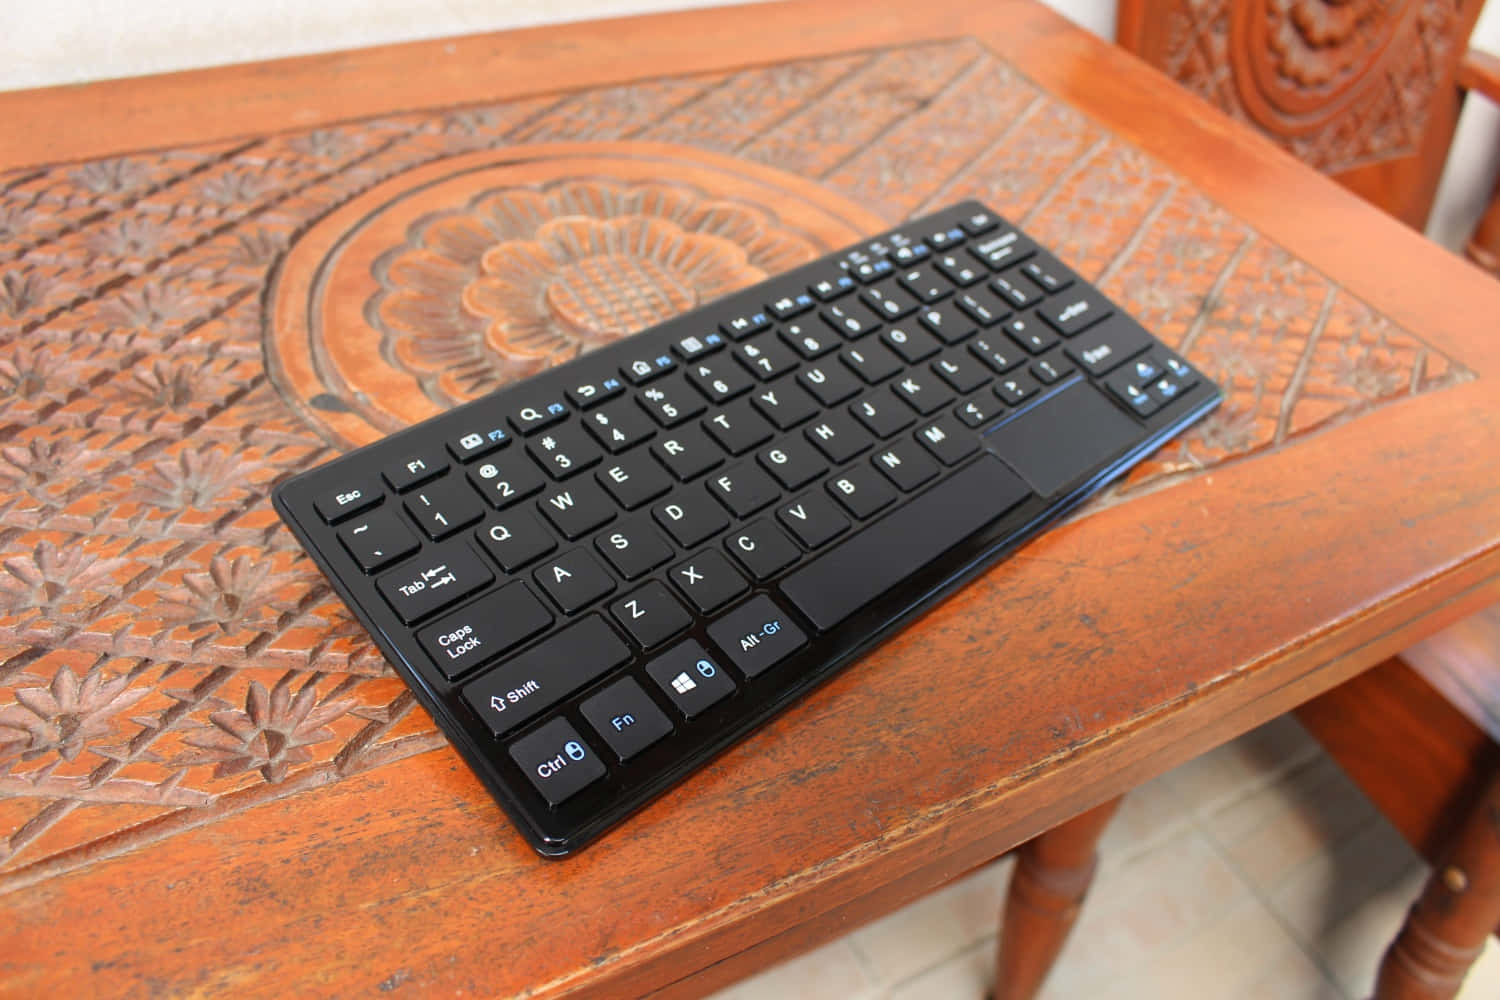 Verbessernsie Ihr Schreib-erlebnis Mit Einer Modernen Tastatur.